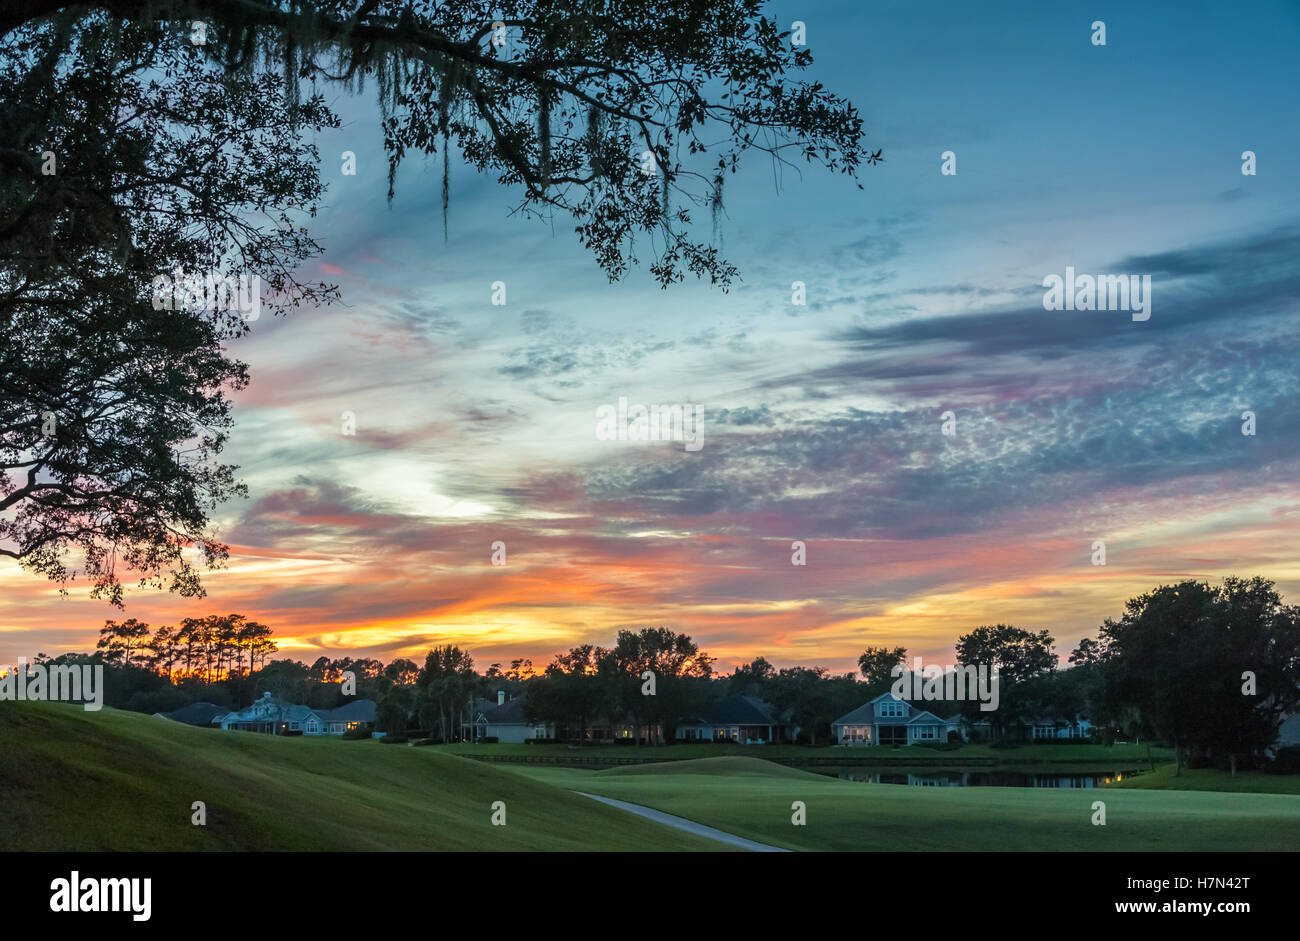 Ein buntes Sonnenuntergang über das dreizehnte Fairway des Dye Valley Course bei TPC Sawgrass Players Club in Ponte Vedra Beach, Florida. Stockfoto